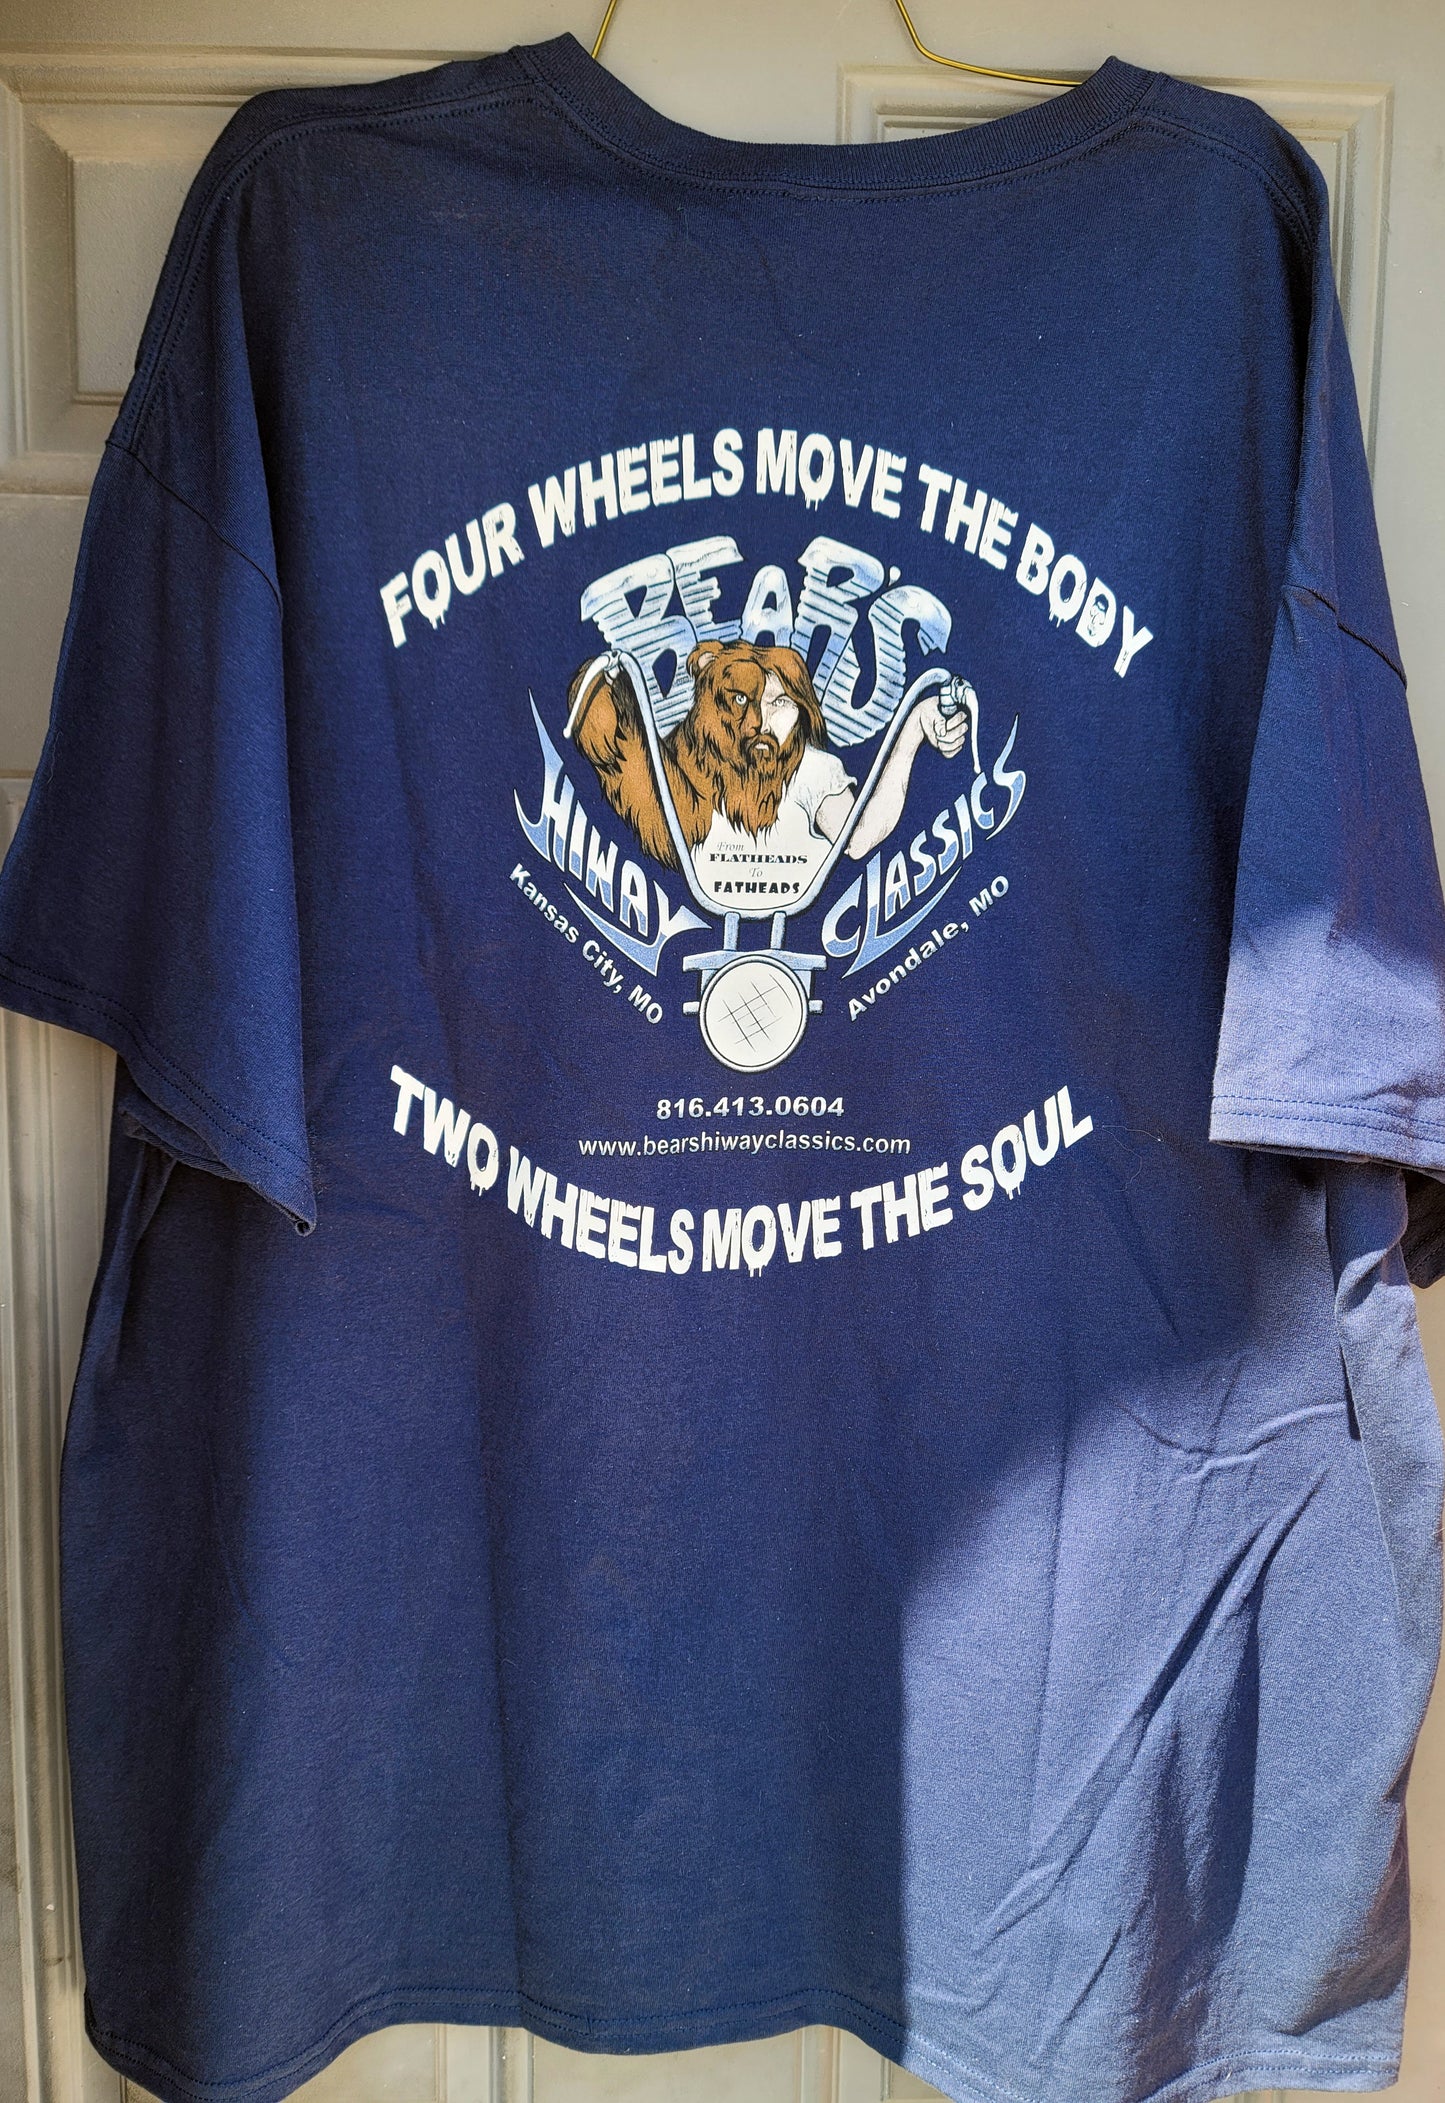 Two Wheels Pocket T-Shirt